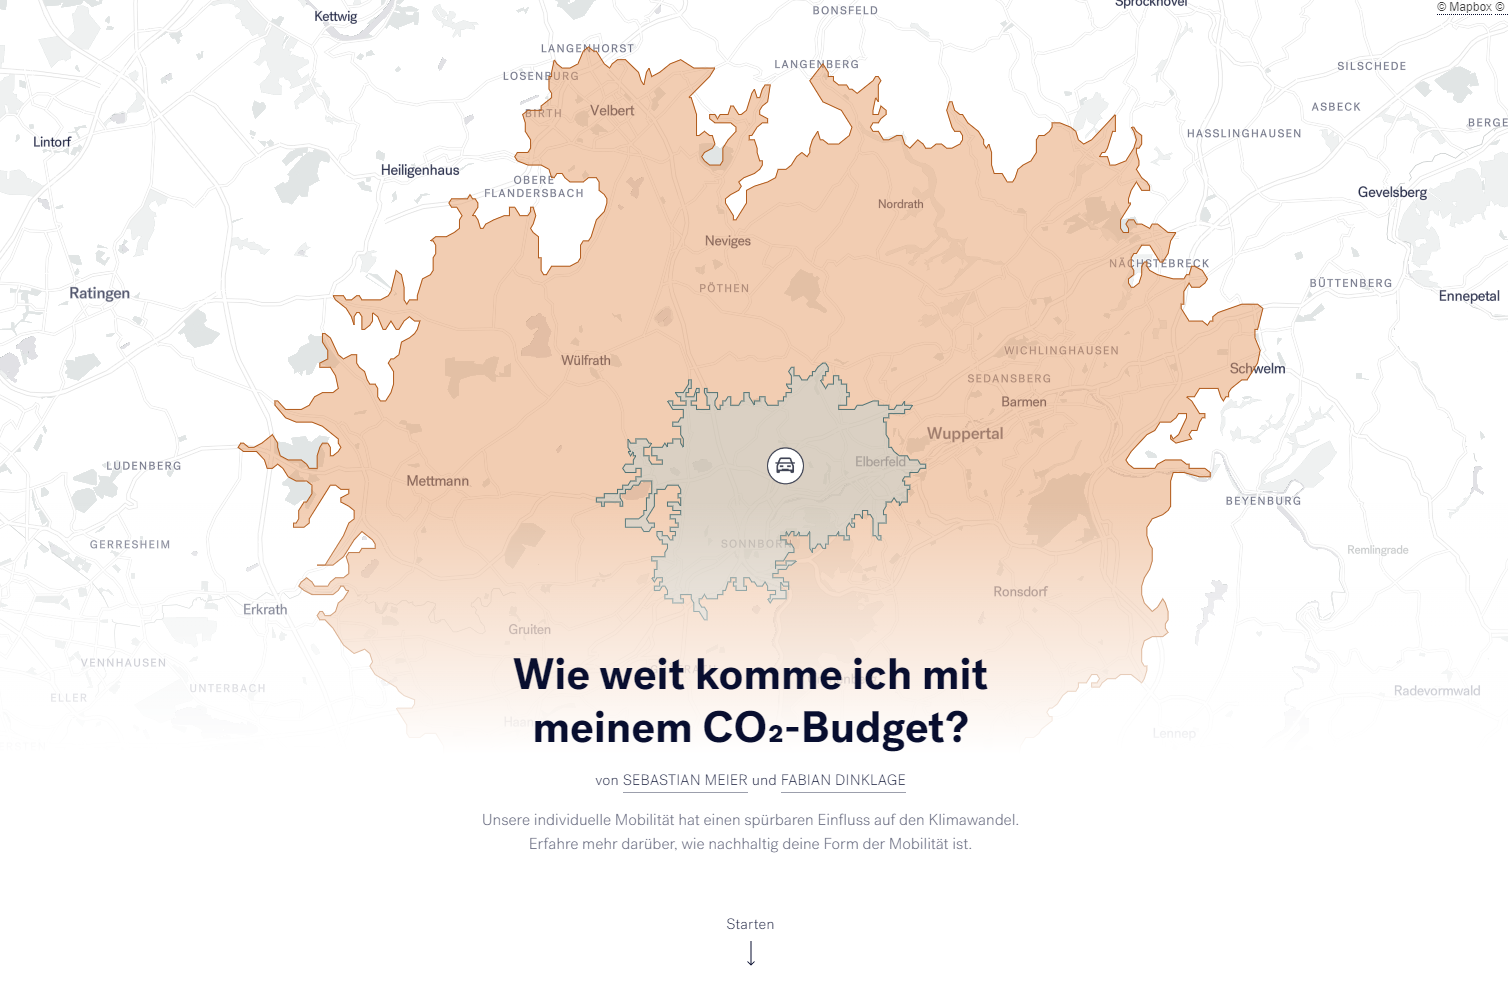 Screenshot of StoryMap with the title in German 'Wie weit komme ich mit meinem CO2-Budget?'